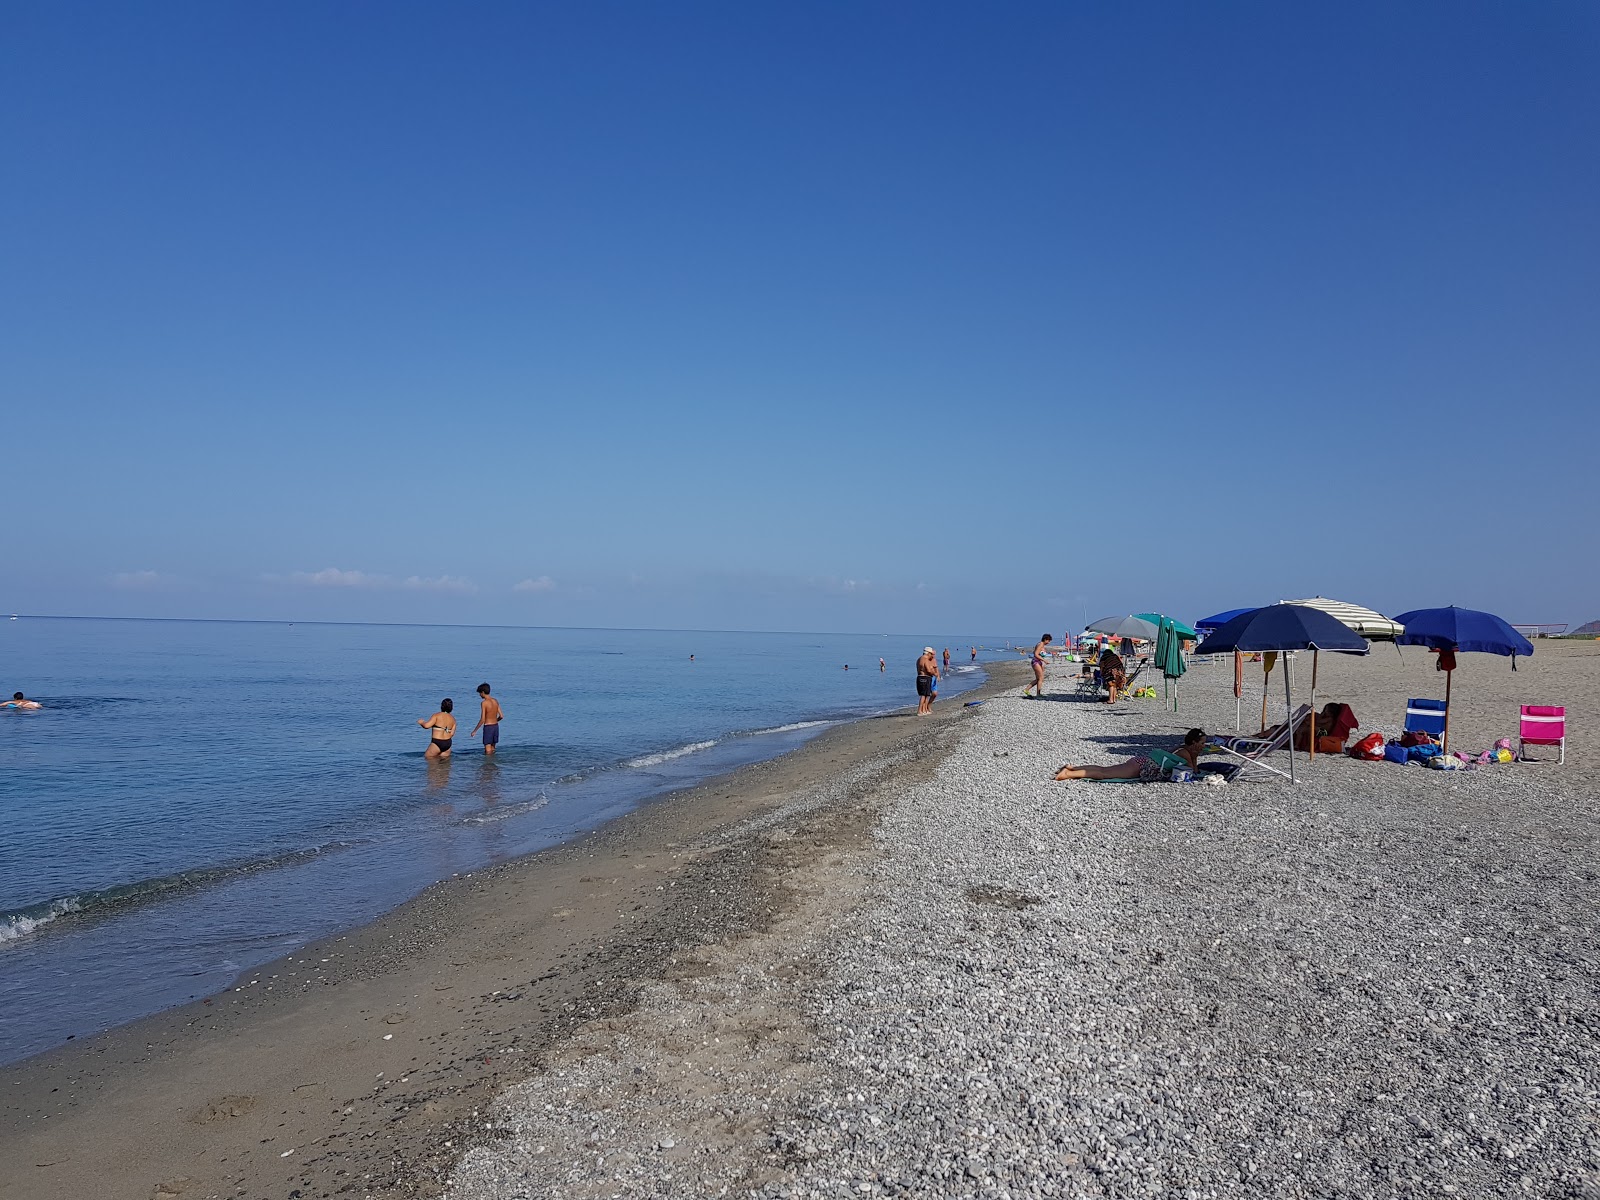 Villaggio del Golfo beach'in fotoğrafı mavi sular yüzey ile